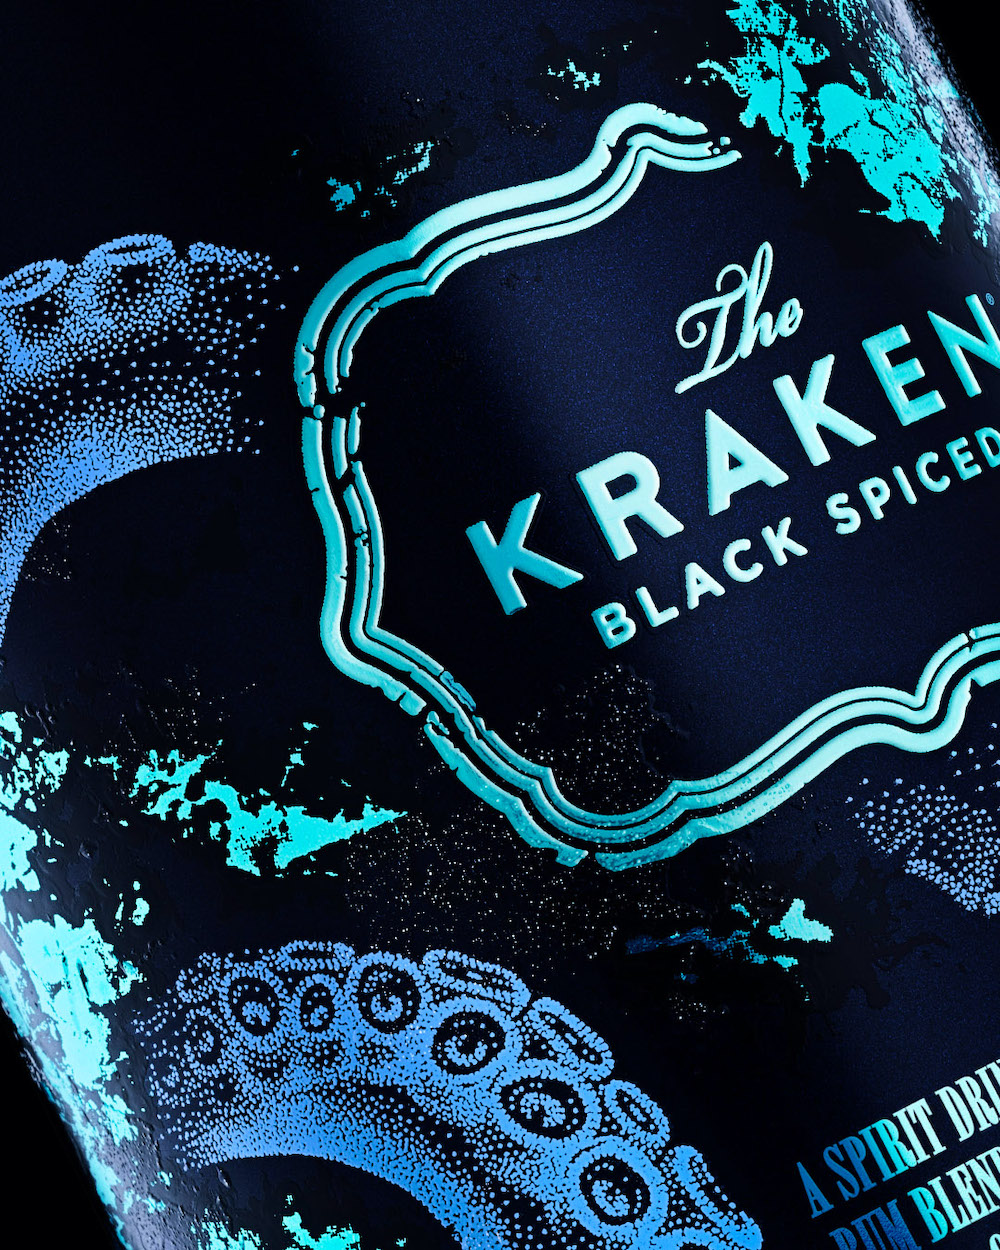 imagen 2 de Imposible perder de vista la nueva botella de The Kraken.